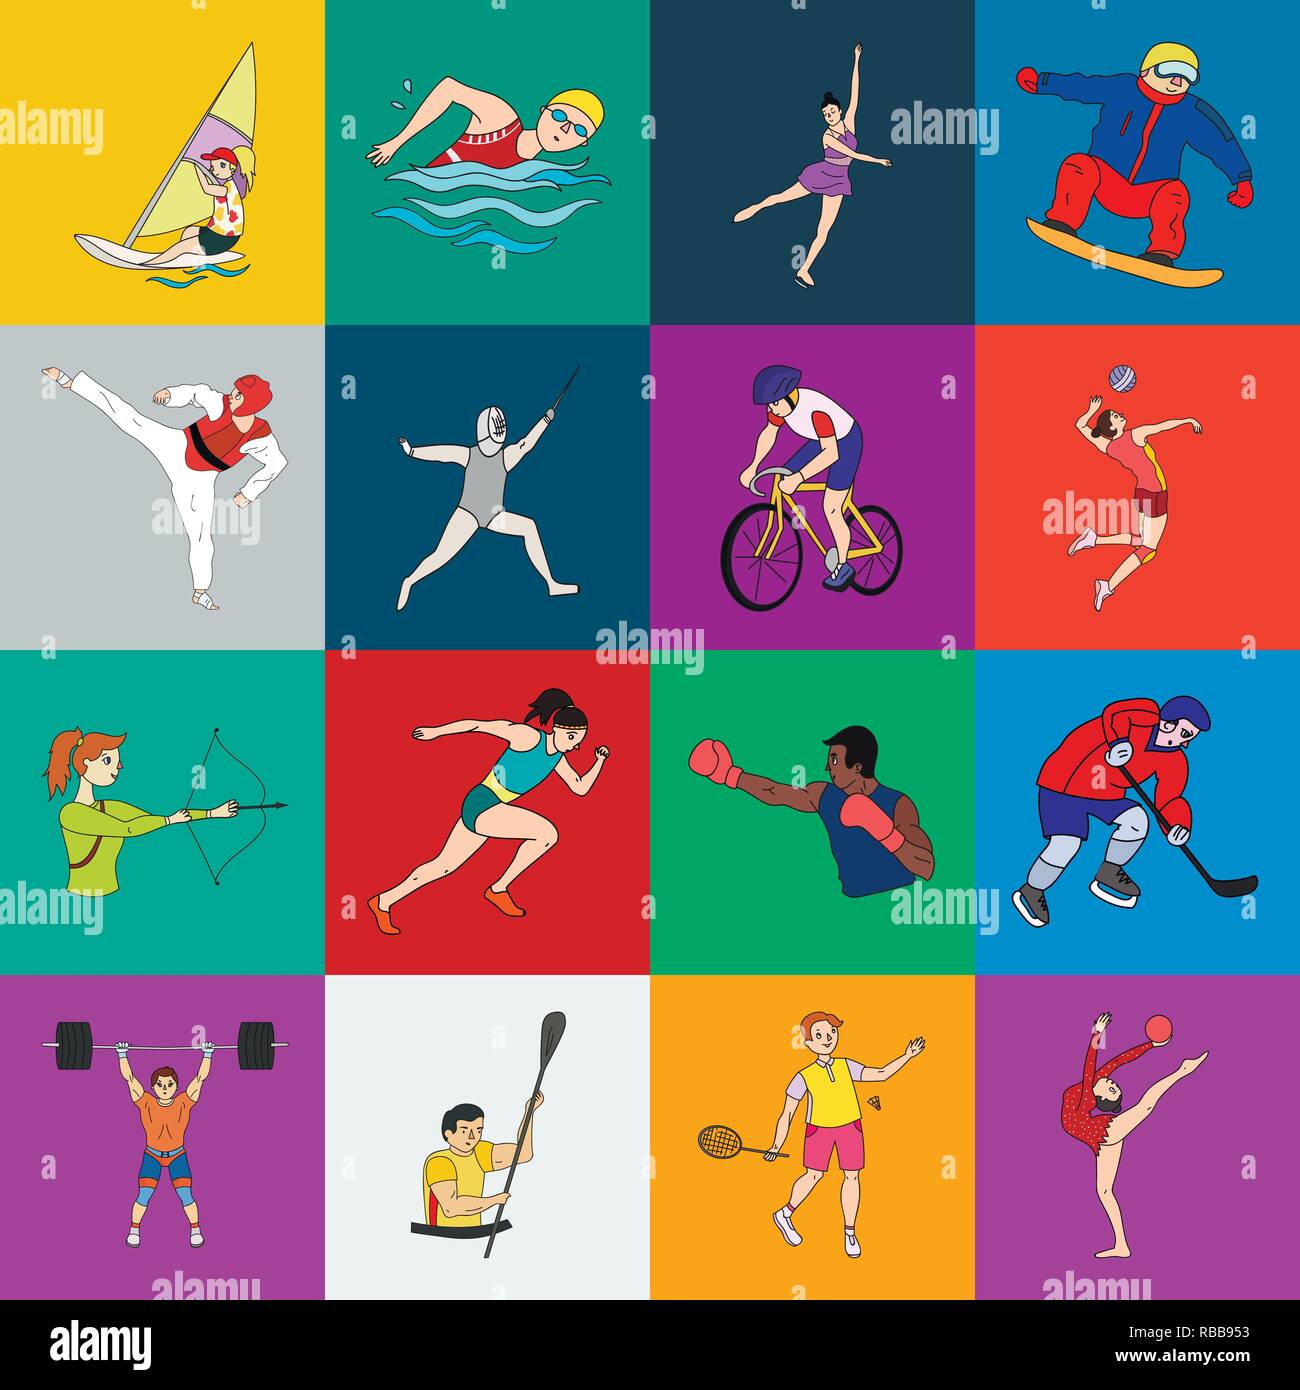 Different kinds of sport. Виды спорта рисунки. Иллюстрации с разными видами спорта. Все спортивные виды спорта. Летние виды спорта.